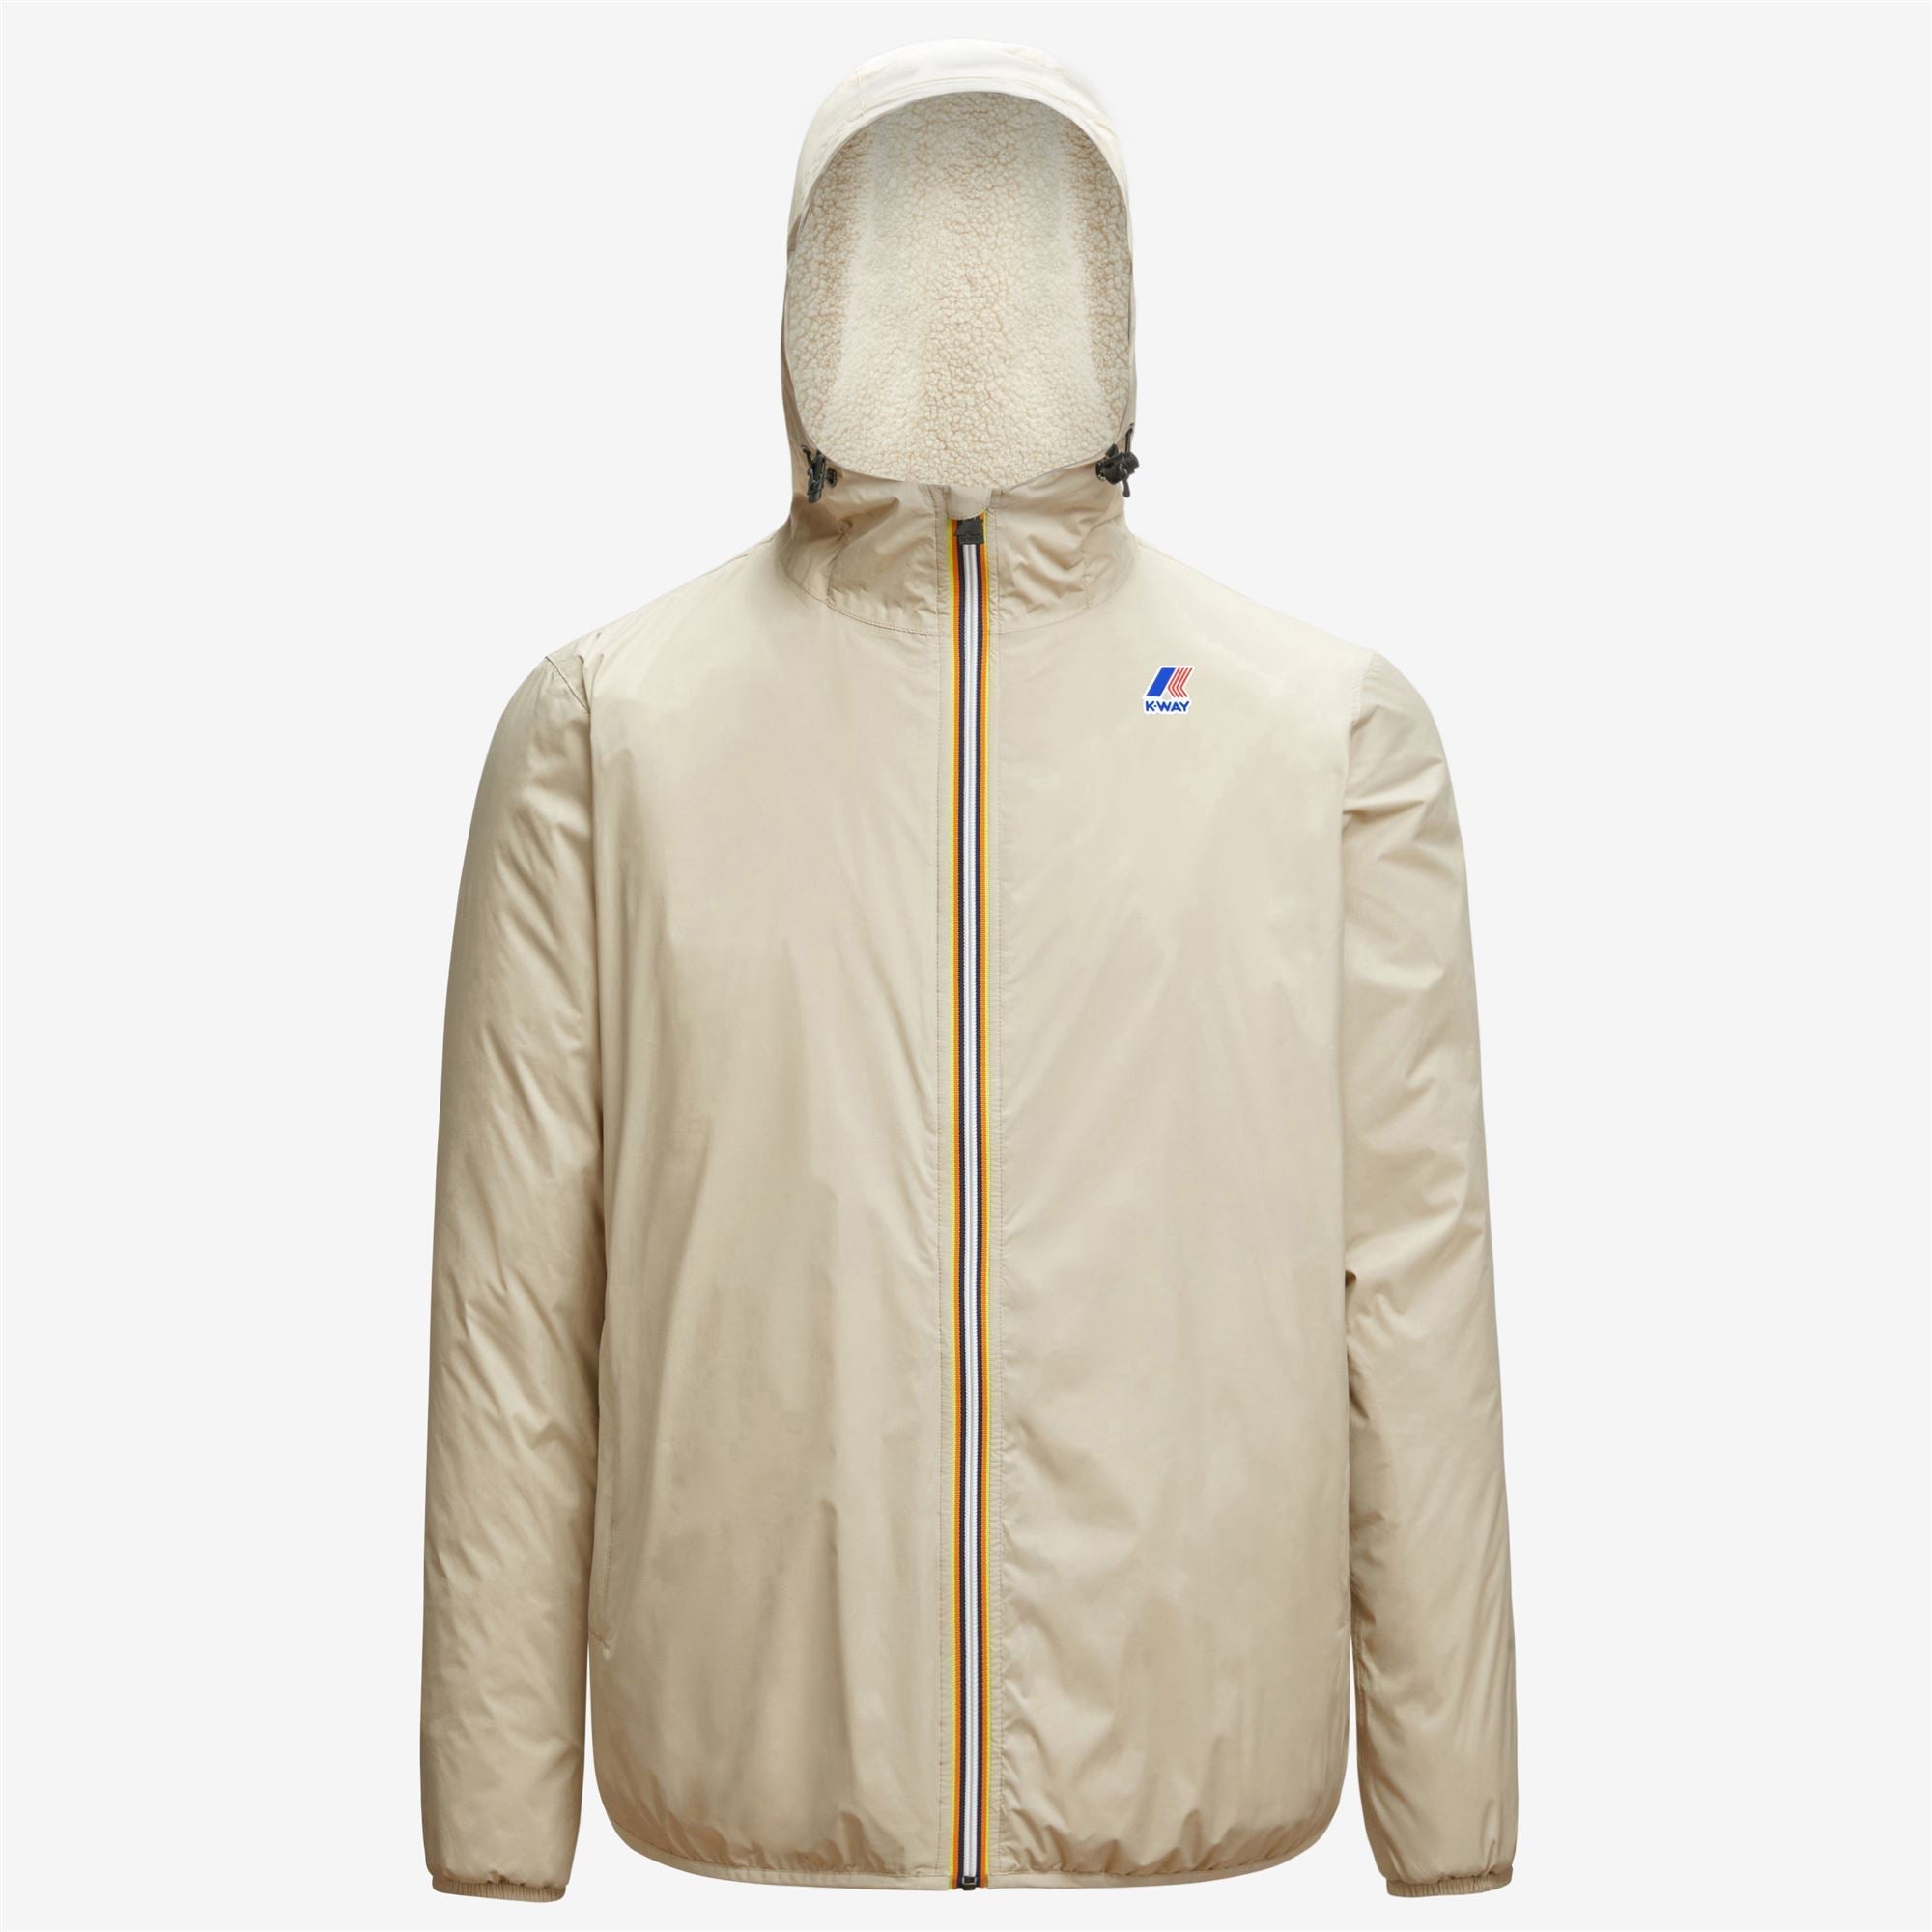 Claude Orsetto - Unisex Lined Full Zip Rain Jacket in Beige Grey